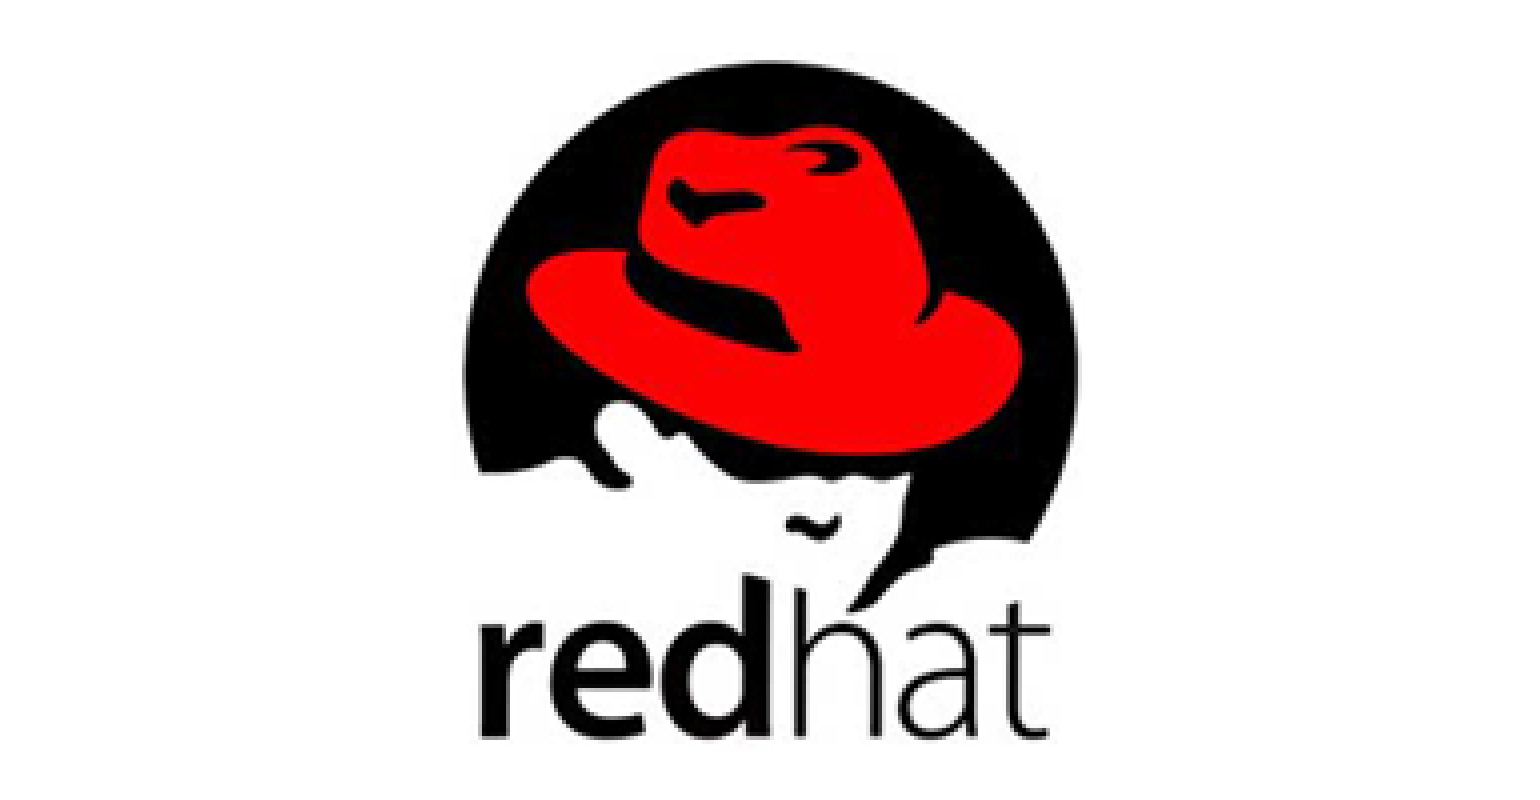 Ред хат. Red hat Enterprise Linux (RHEL). Red hat логотип. Red hat Enterprise Linux logo. Red hat логотип без фона.